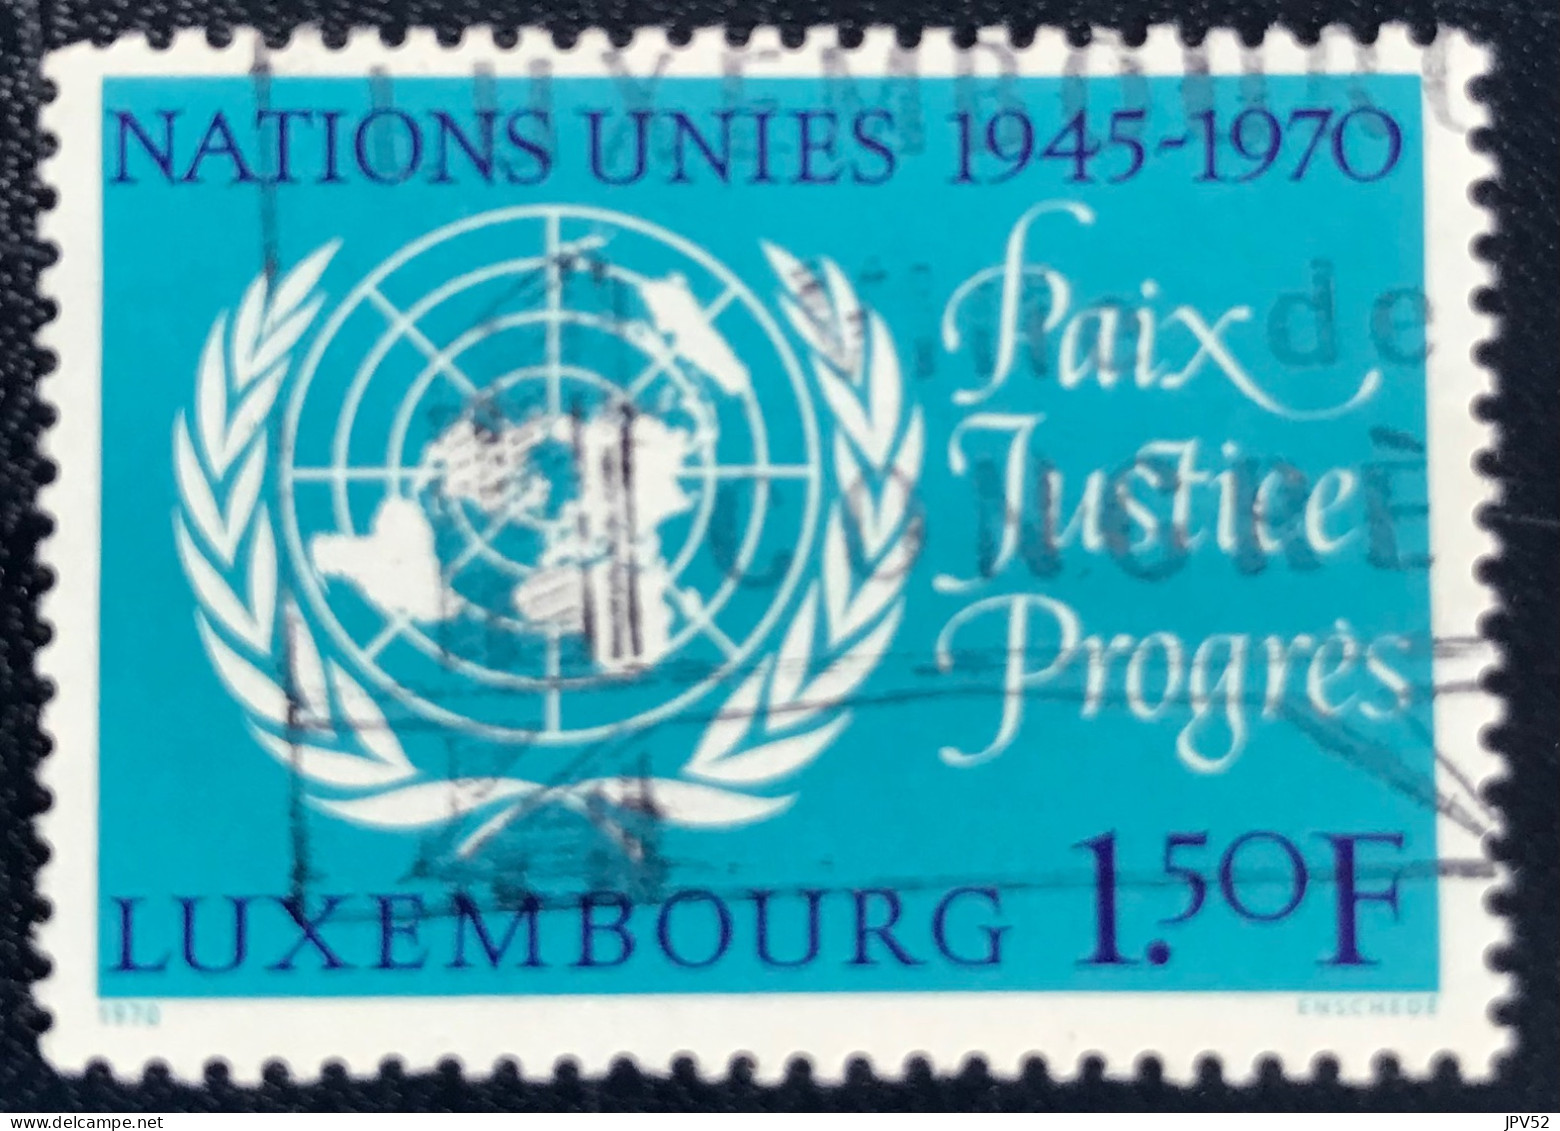 Luxembourg - Luxemburg - C18/32 - 1970 - (°)used - Michel 813 - Embleem VN - Gebraucht